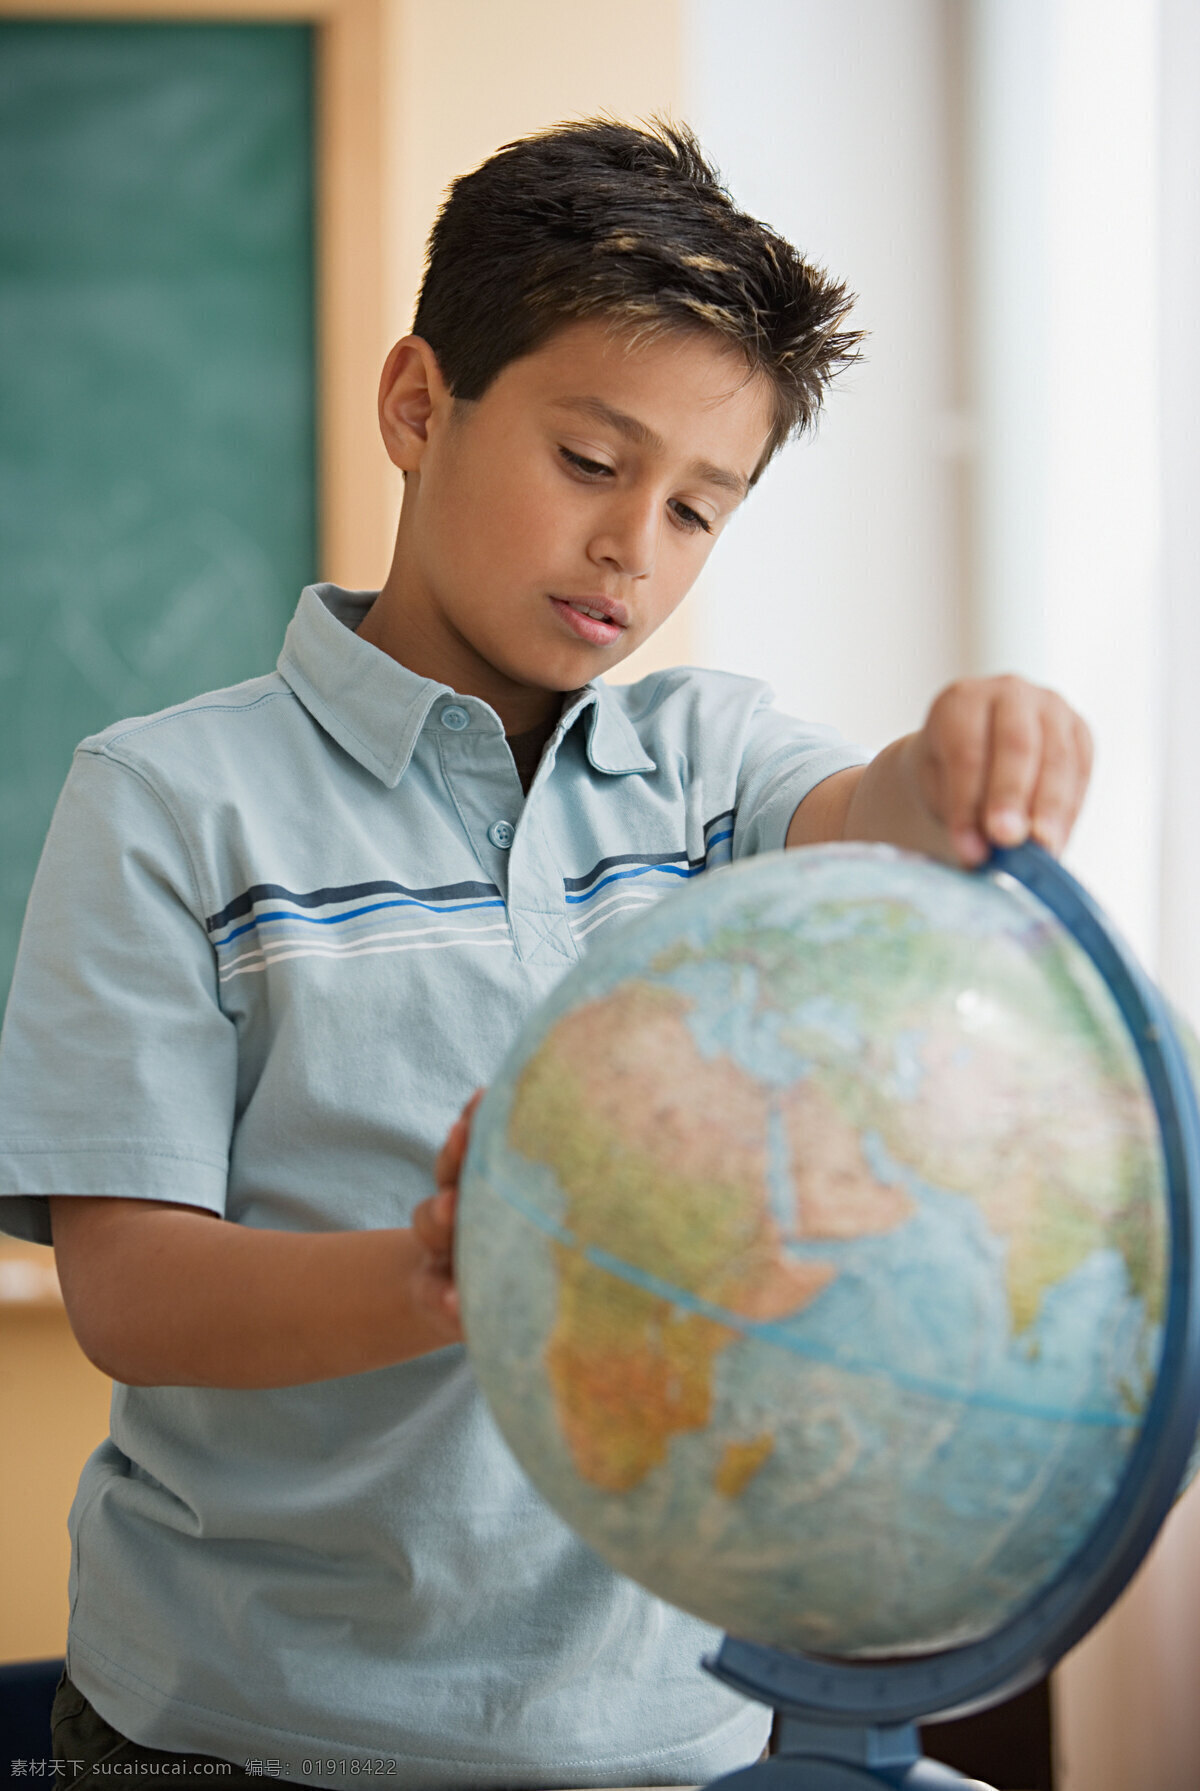 看 地球仪 小 男孩 黑板 小男孩 外国男孩 学生 儿童 地理 教室 室内 课堂 学习 教学 教育 儿童学习教育 高清图片 地球图片 环境家居